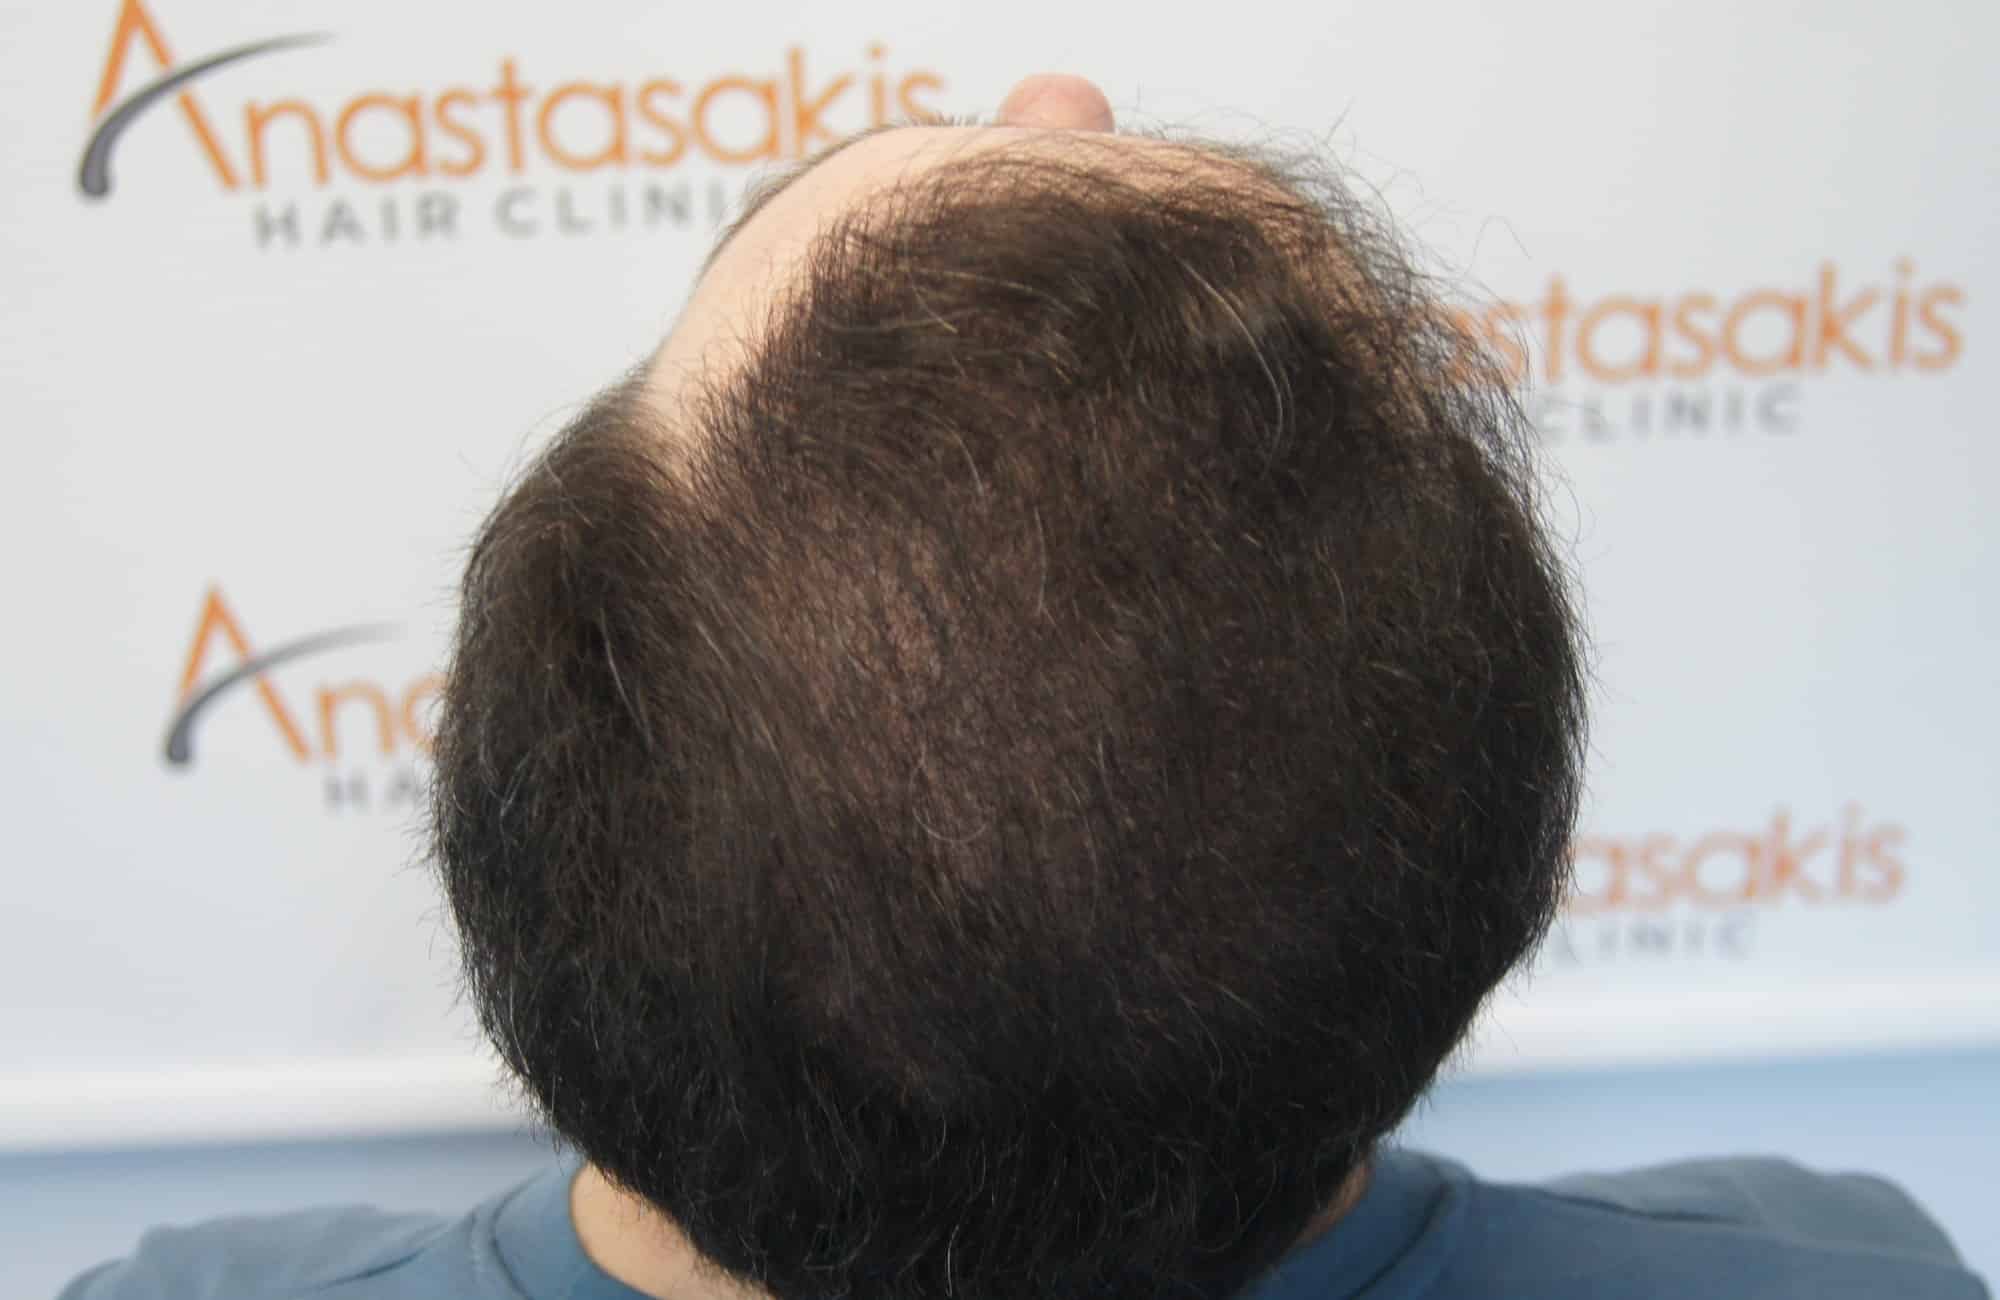 περιστατικο μετα τη μεταμόσχευση μαλλιων με 3600 fus στην anastasakis hair clinic 8